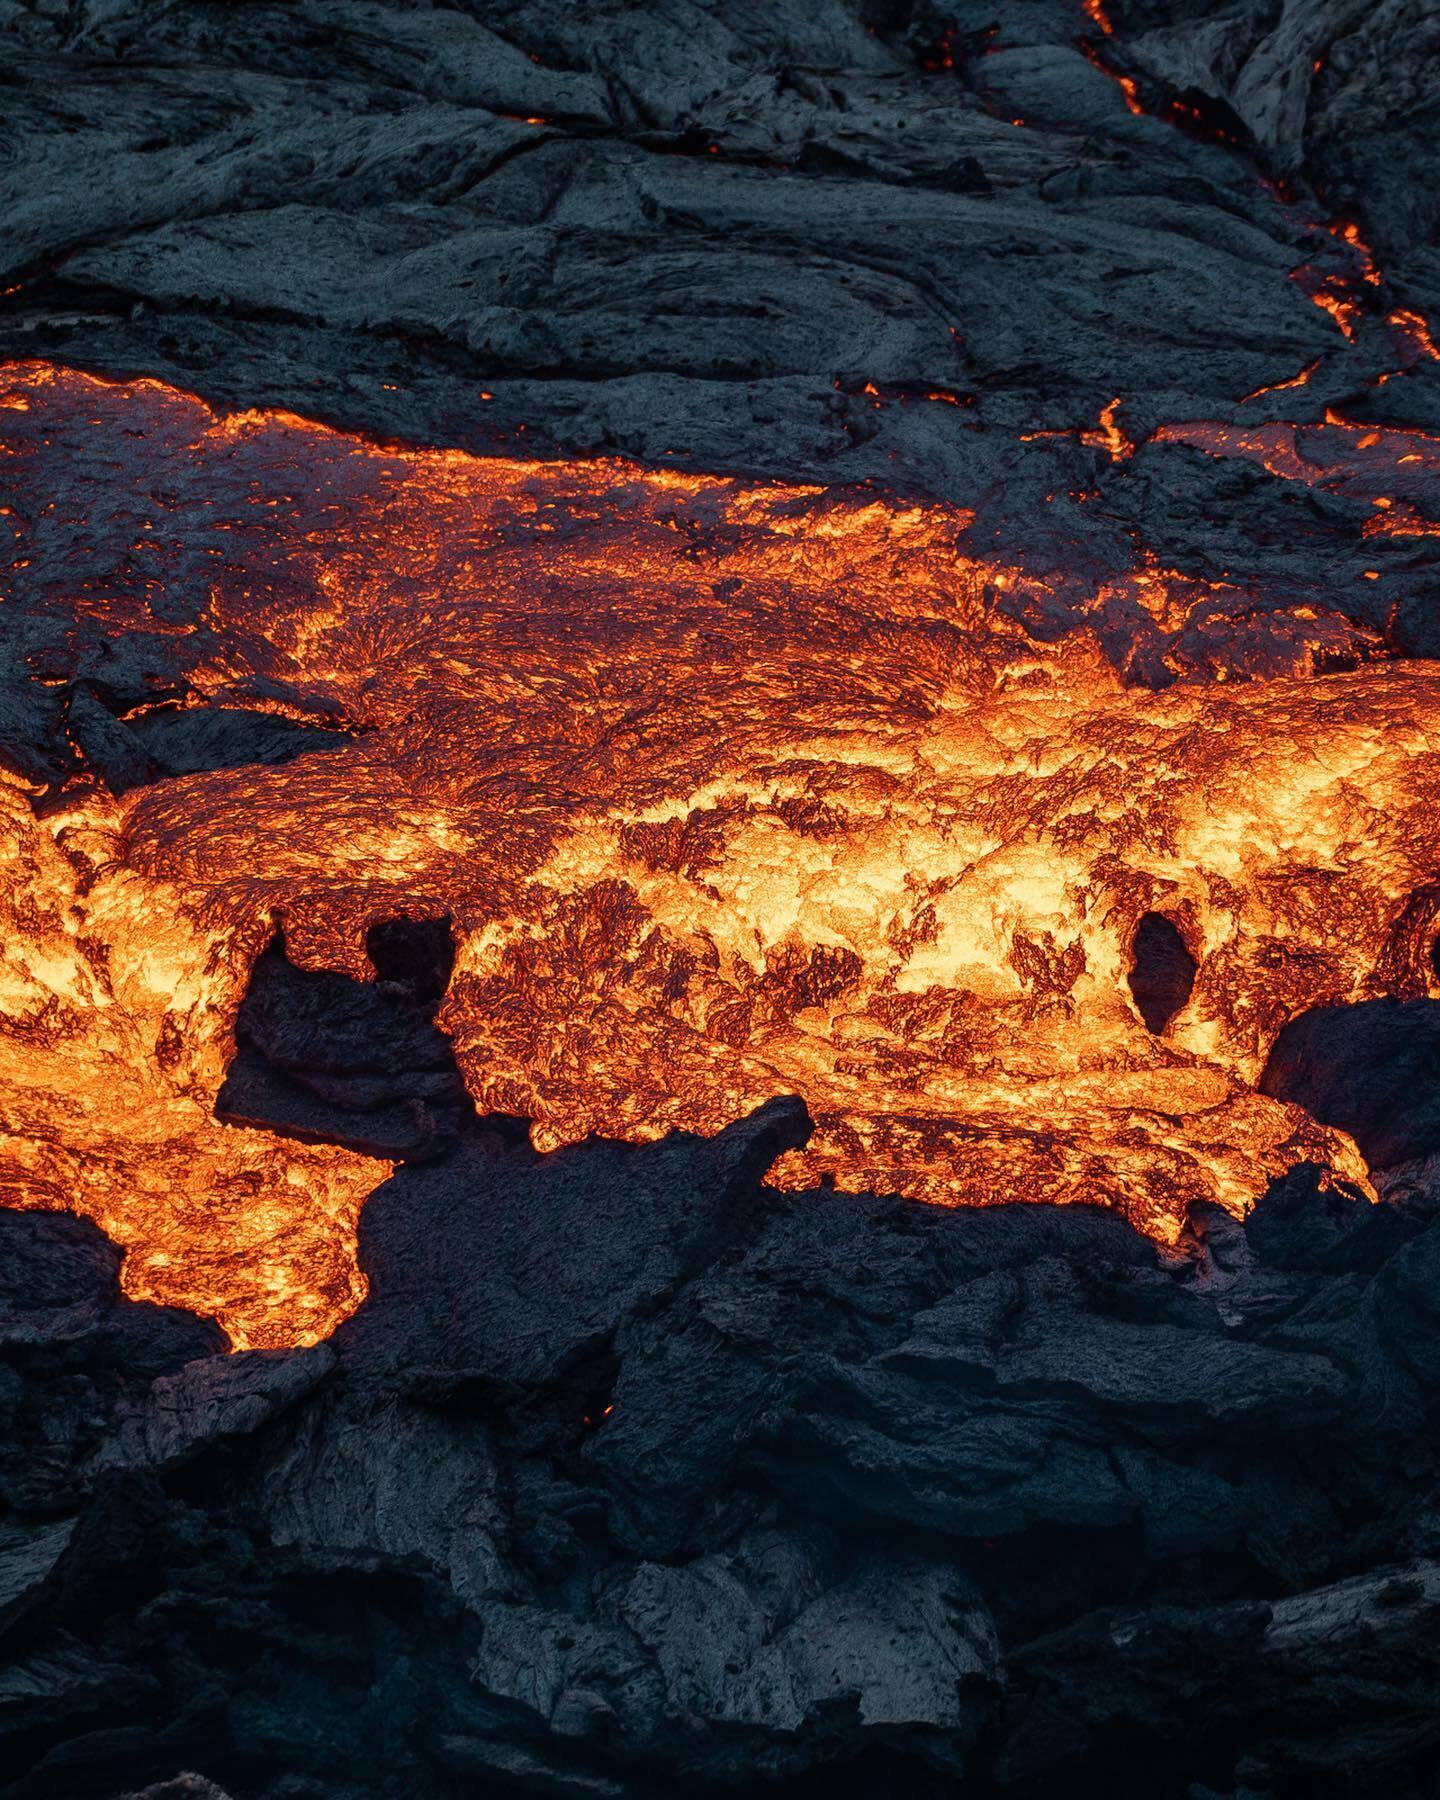 Извержение вулкана Фаґрадальсфьядль в Исландии